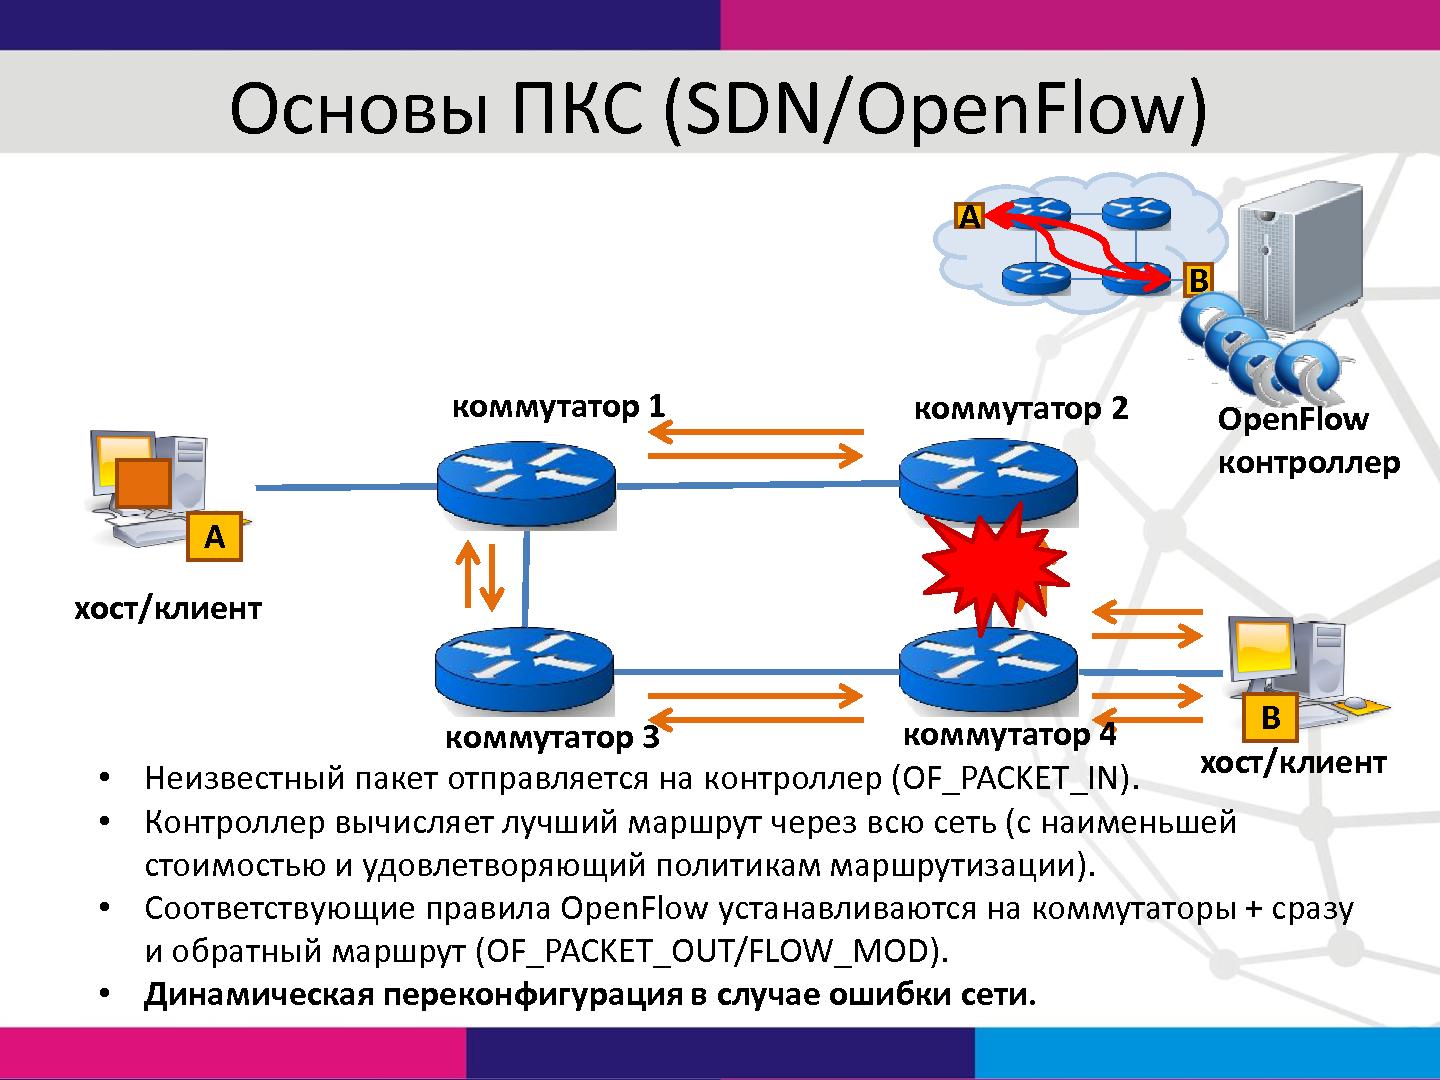 Файл:Управление корпоративной сетью на основе SDN-технологий (Александр Шалимов, SECR-2014).pdf